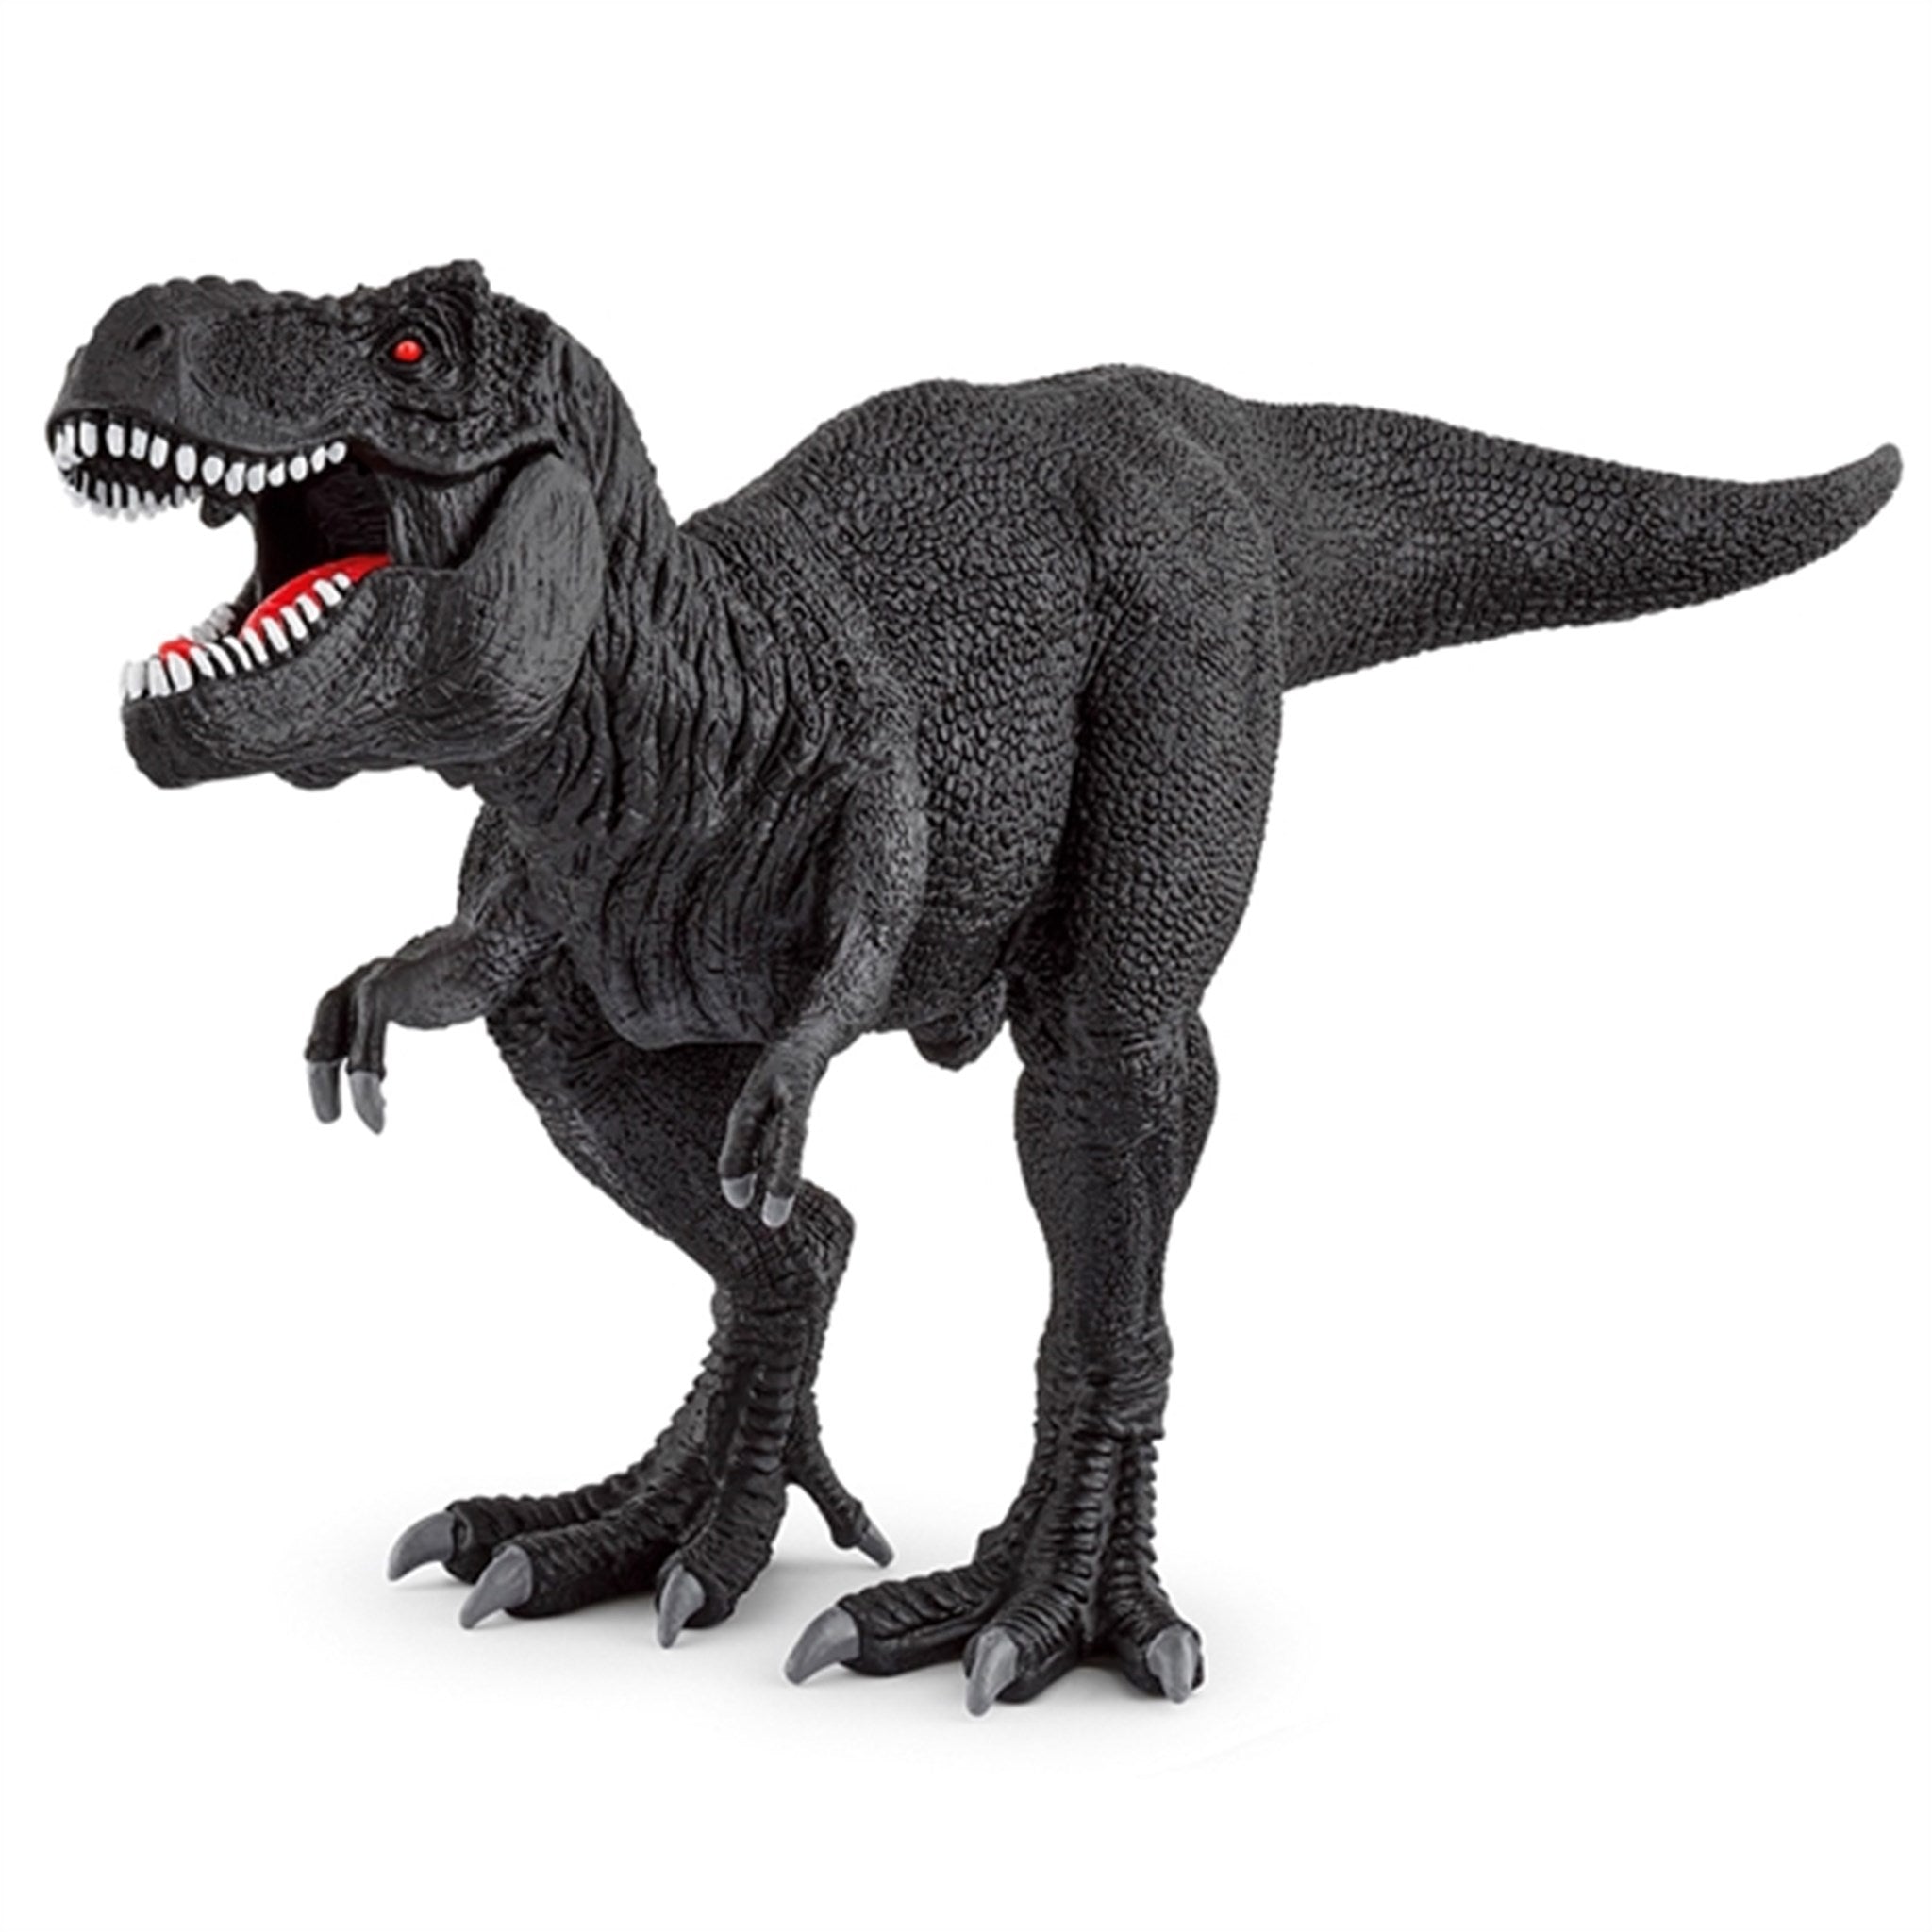 Schleich Dinosaurs Limited Edition Tyrannosaurus Rex Black